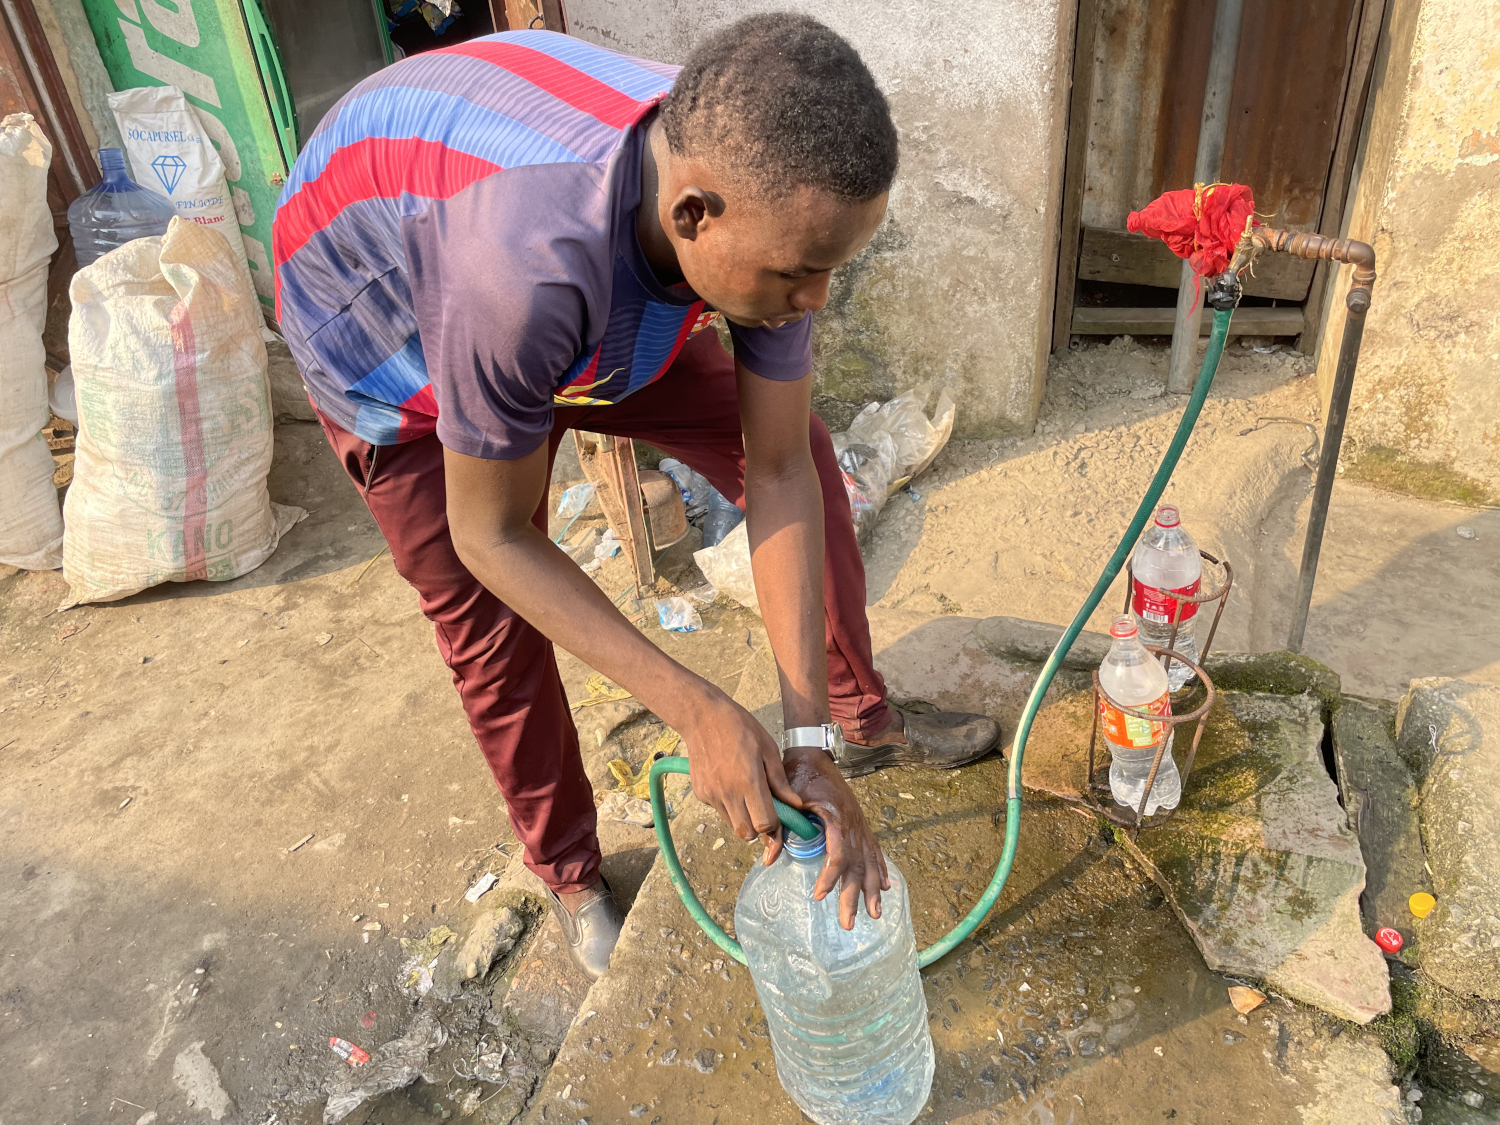 Lorsque Juliette BOYER parle d’accès à l’eau potable, c’est principalement à travers les points d’eau comme celui-ci dans le quartier de Congo à Douala. Dans le quartier de Bonadibong, par exemple, il n’existe pas de tel point d’eau © Globe Reporters